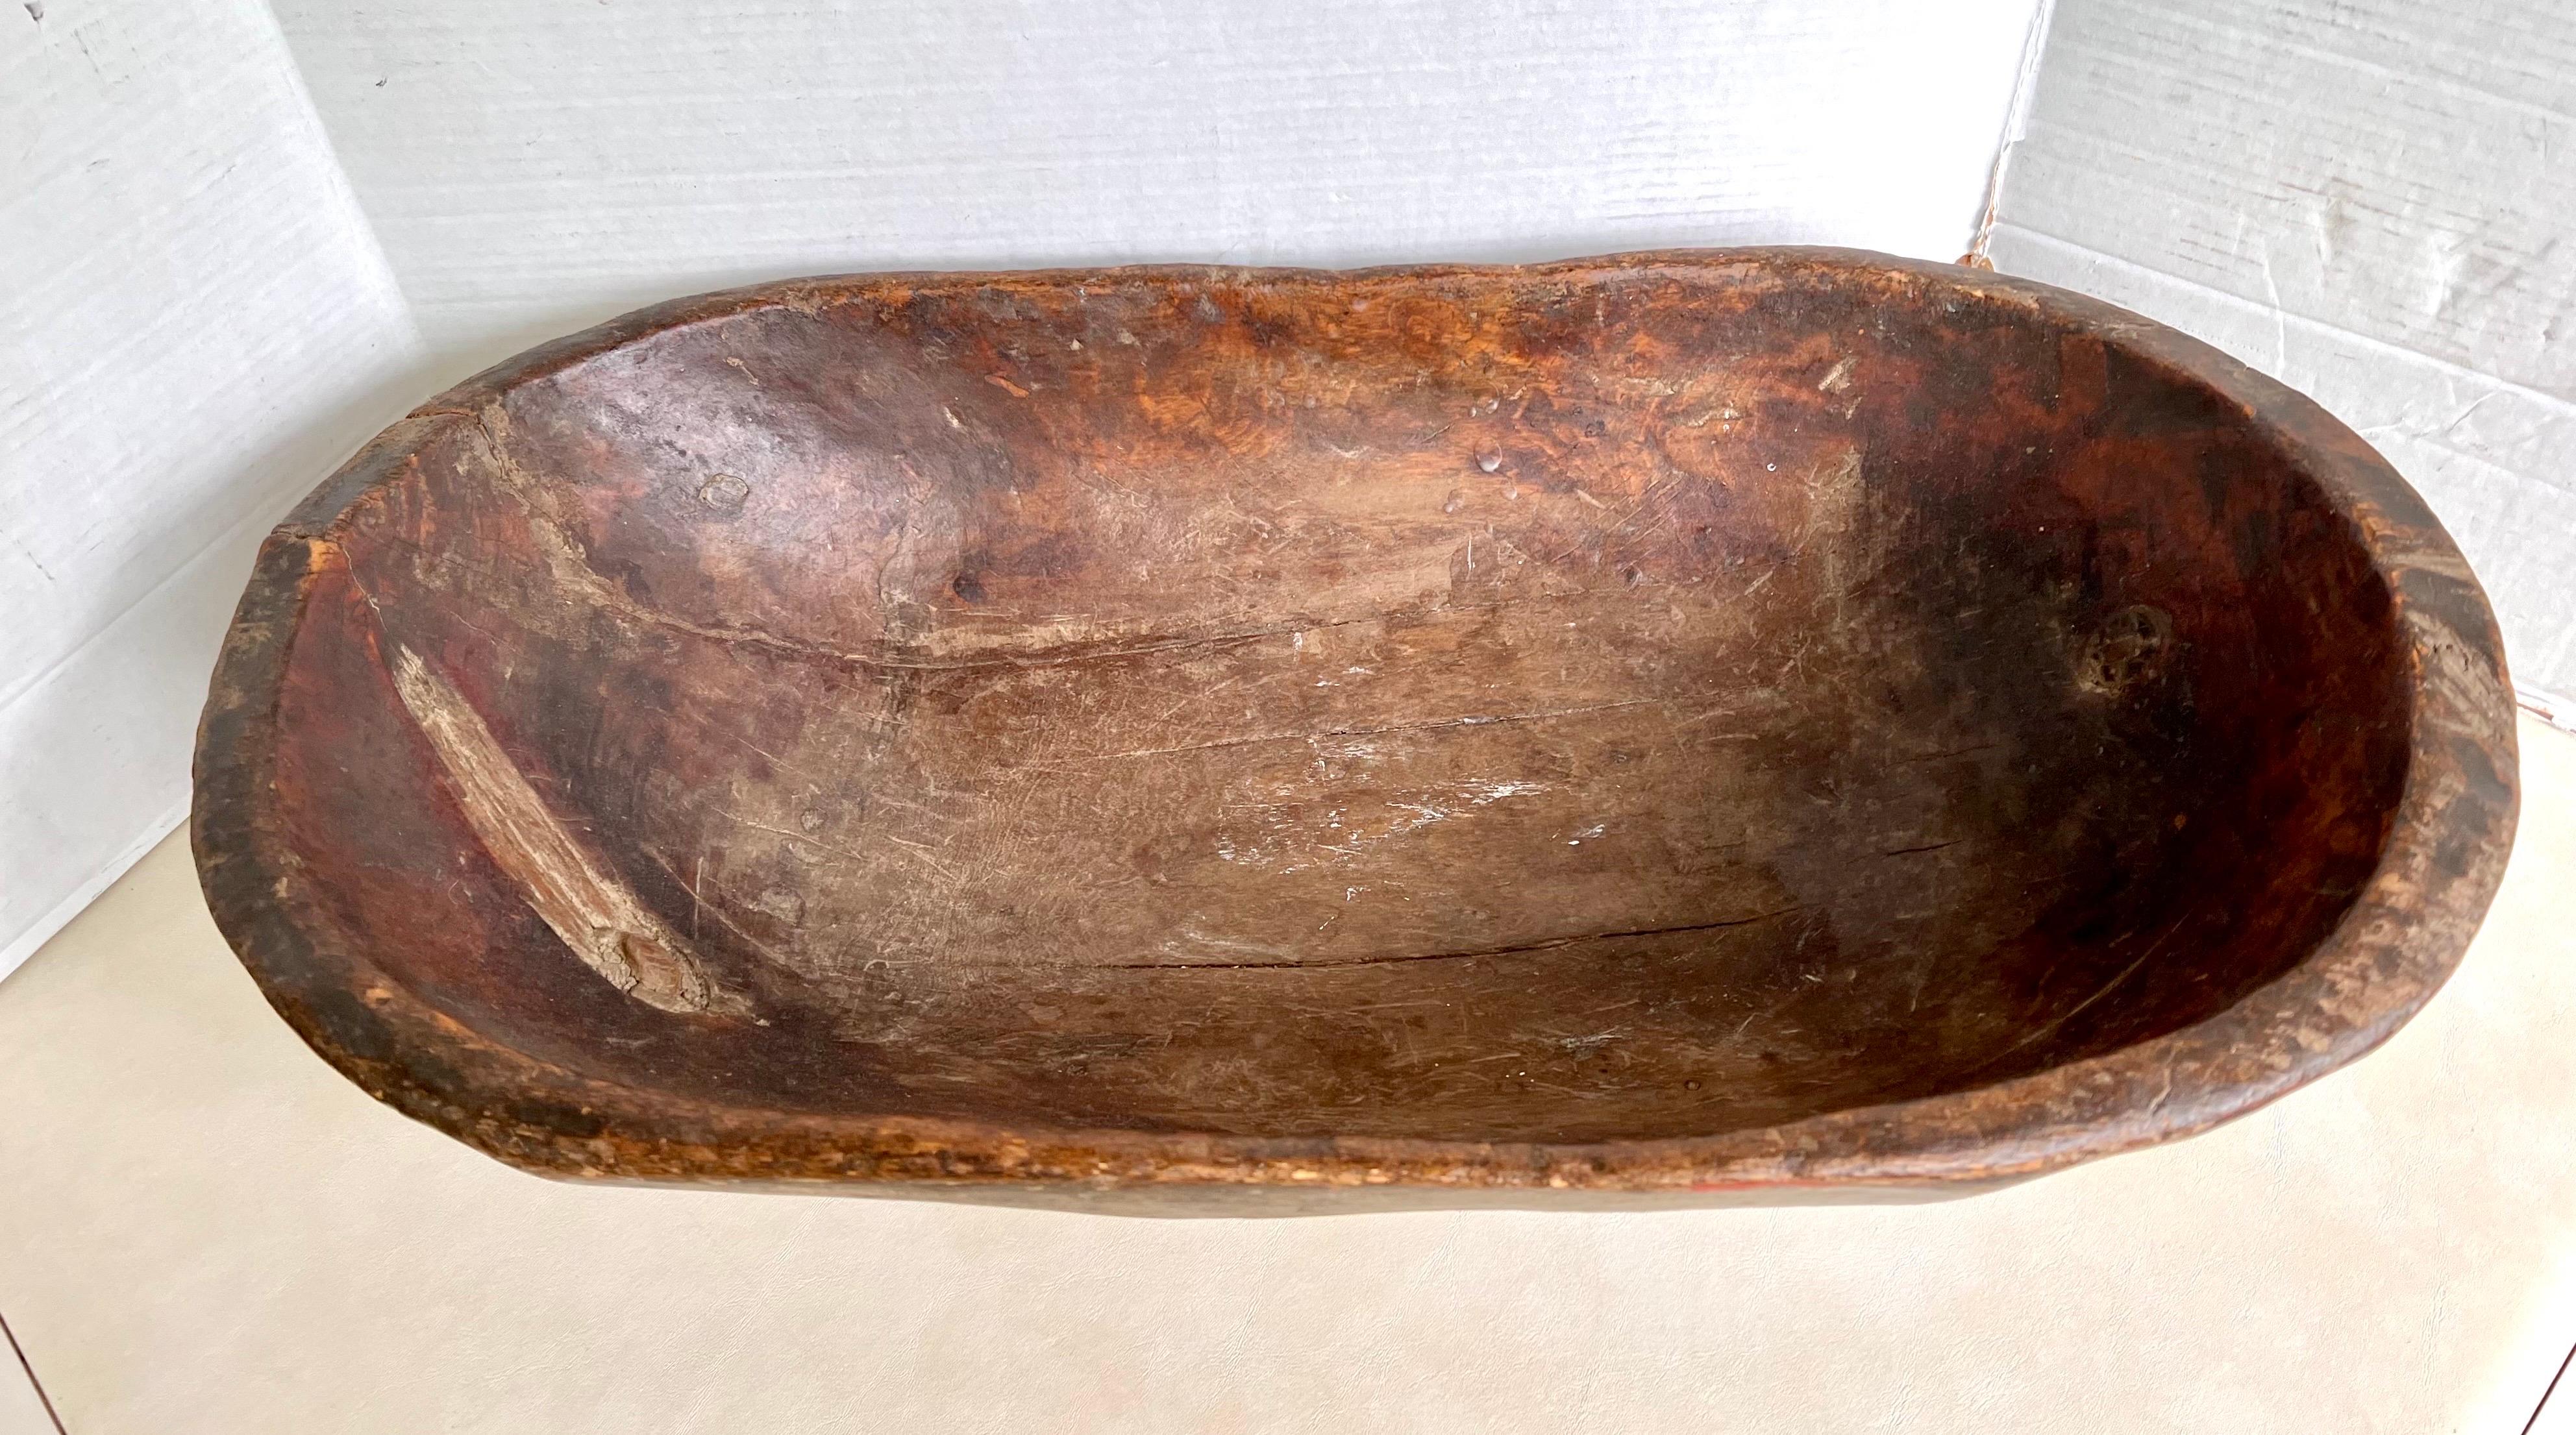 Handgefertigte große hölzerne Teigschüssel aus einem Stück Holz geschnitzt. Hat eine schöne Patina nur durch sein Alter und Gebrauch erworben.